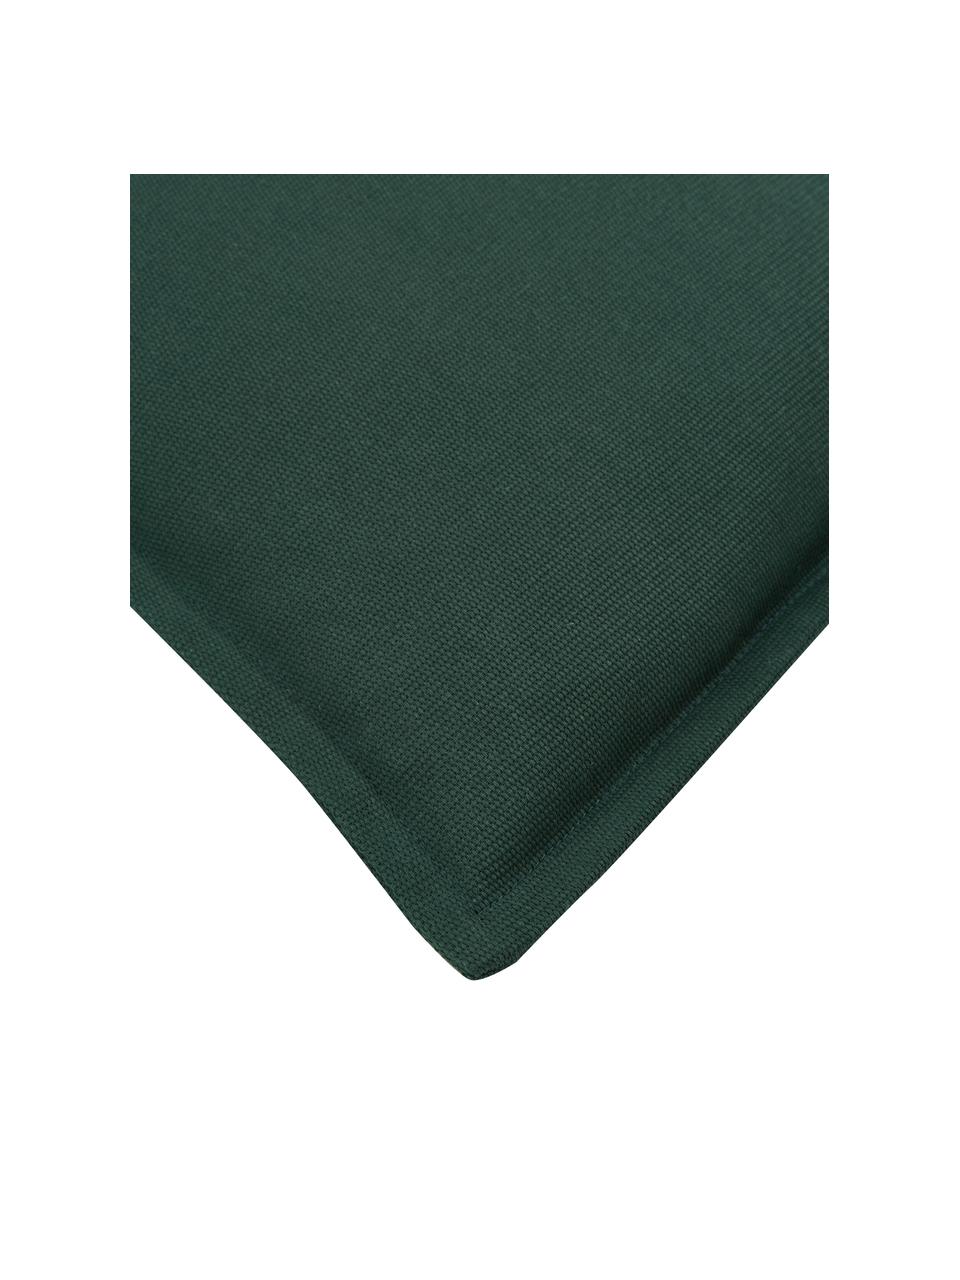 Federa arredo in cotone verde scuro Mads, 100% cotone, Verde scuro, Larg. 30 x Lung. 50 cm